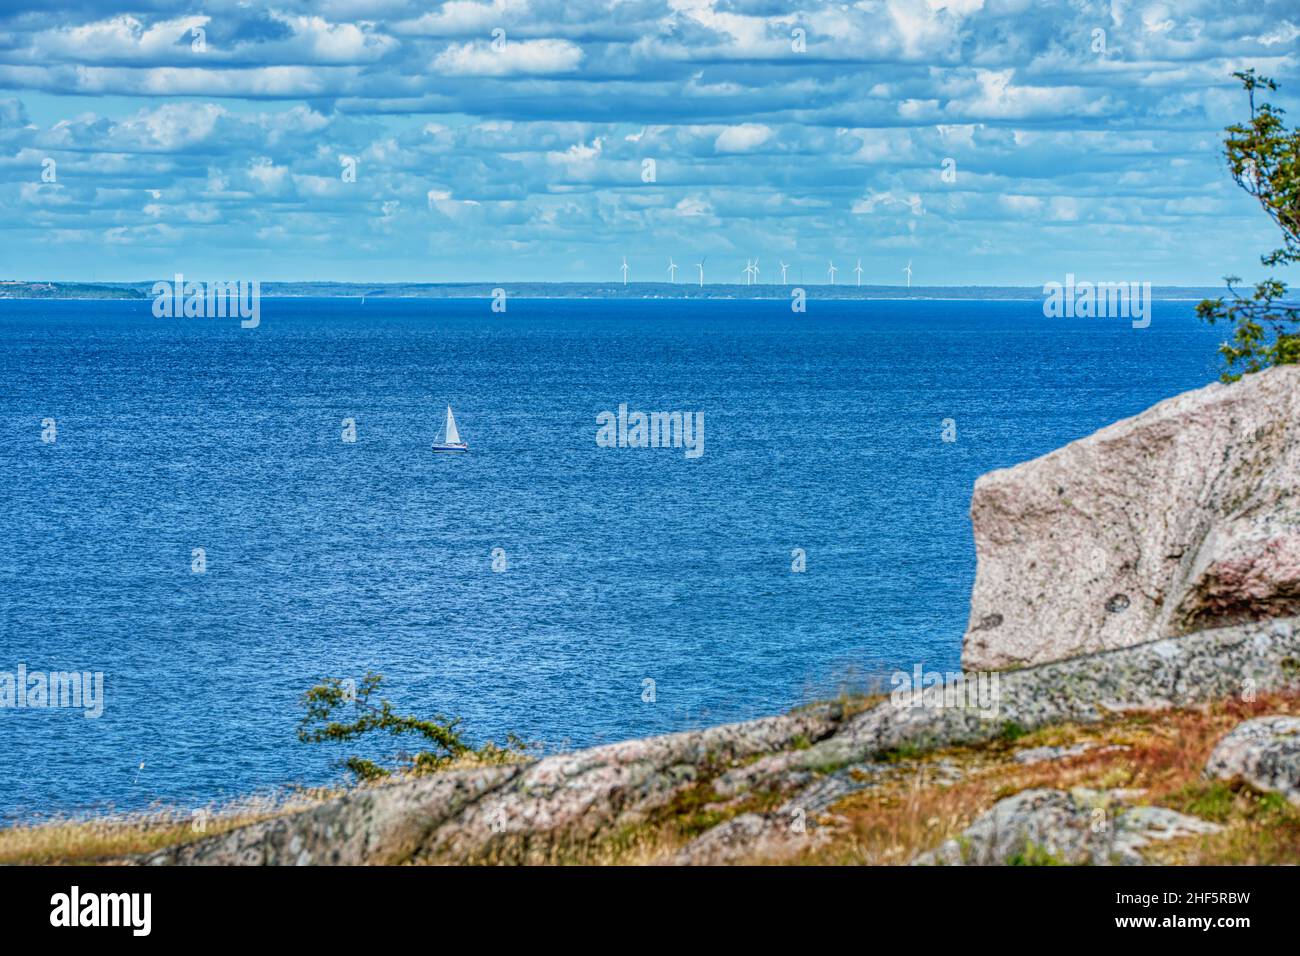 Faraway, piccola barca a vela o barca a vela viaggiando da solo in mare presso l'isola di Hano, Svezia, trasmette la pace o la tranquillità in una vacanza estiva solitaria Foto Stock